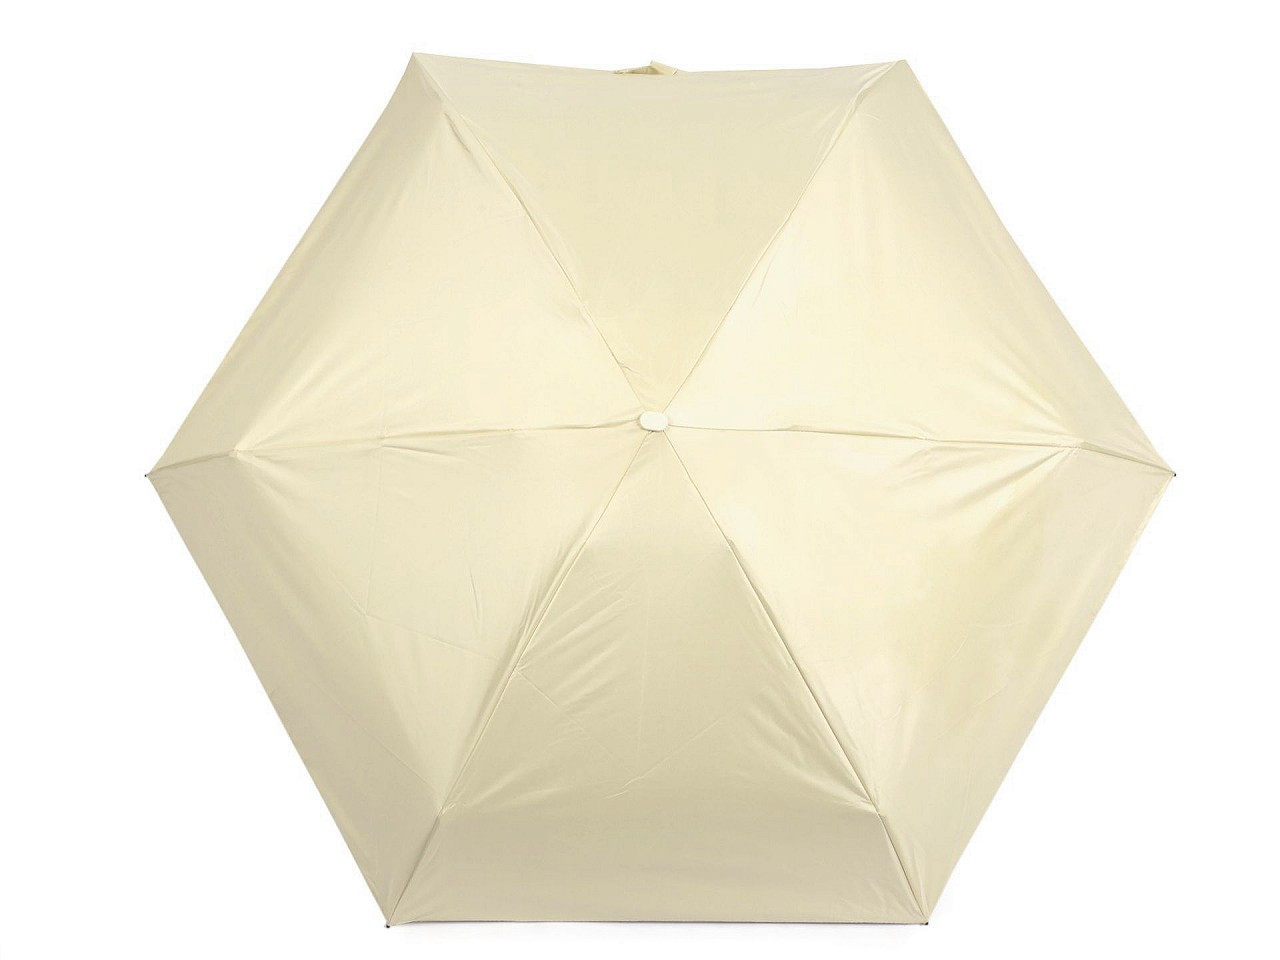 Skládací mini deštník s pevným pouzdrem, barva 1 béžová nejsv.